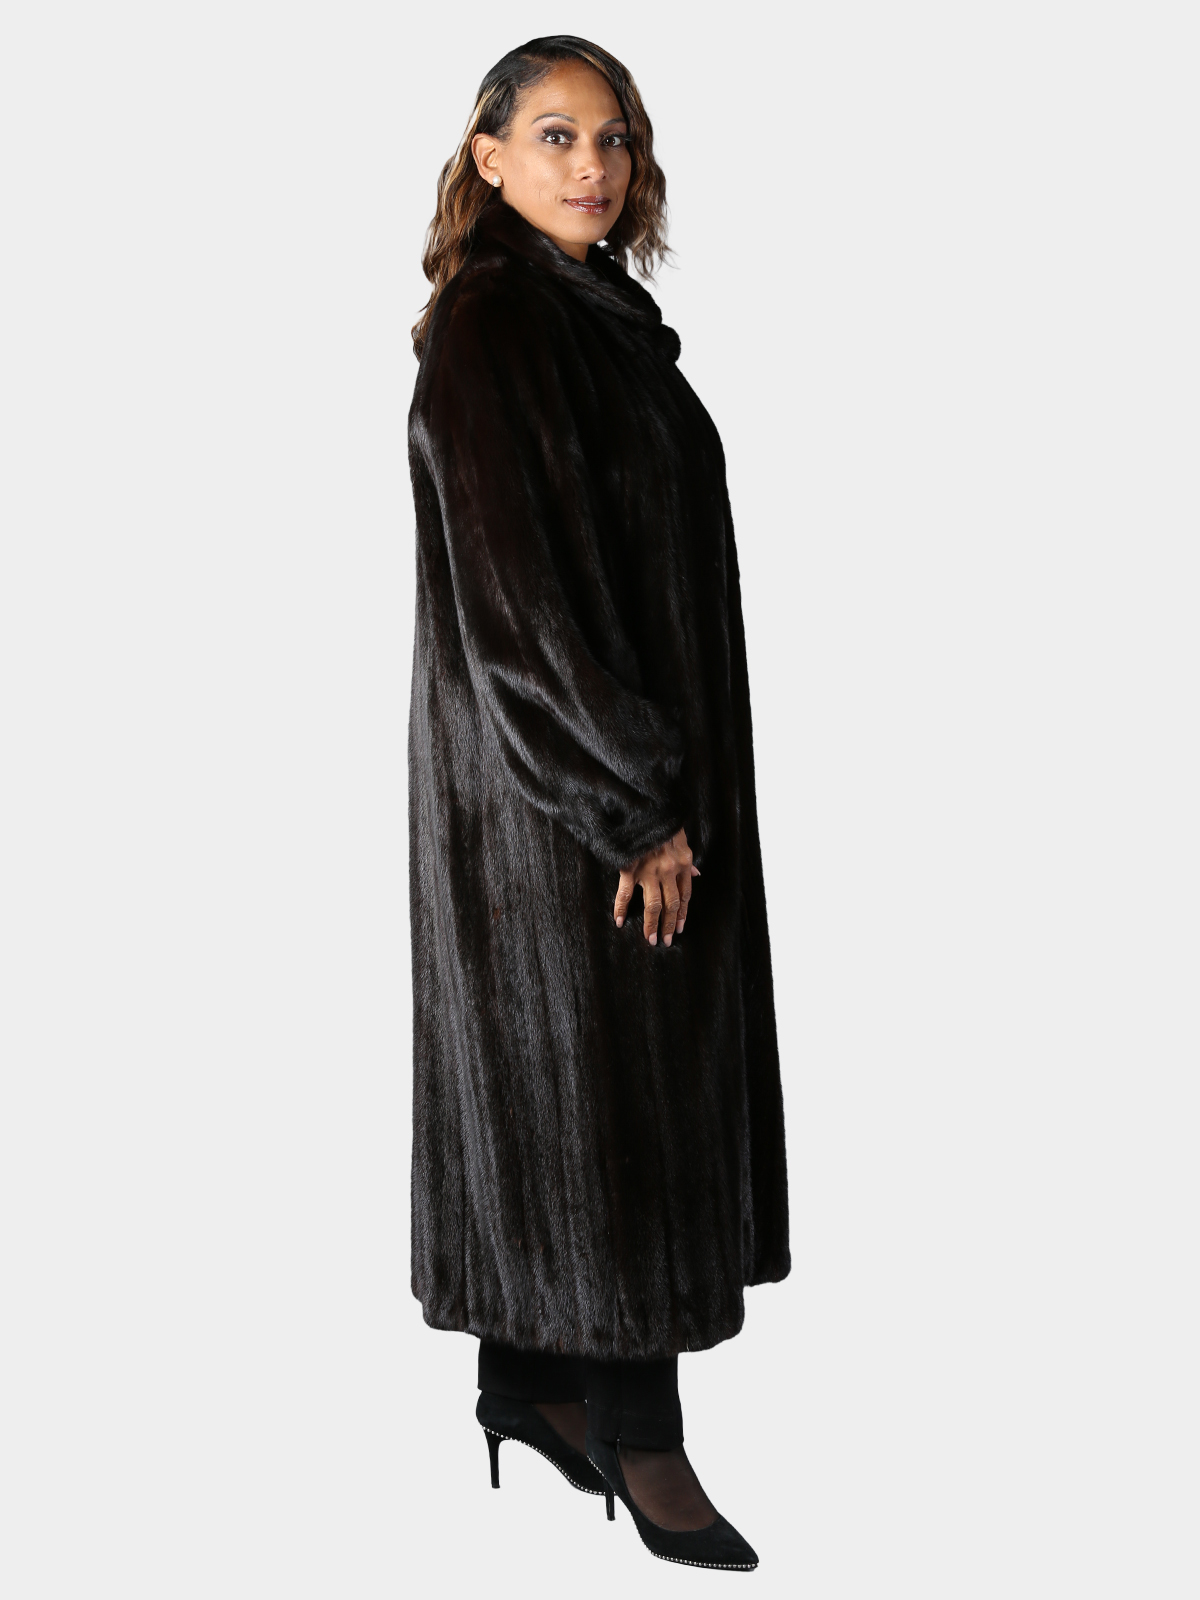 Deep Mahogany Female Mink Fur Coat - Estate Furs